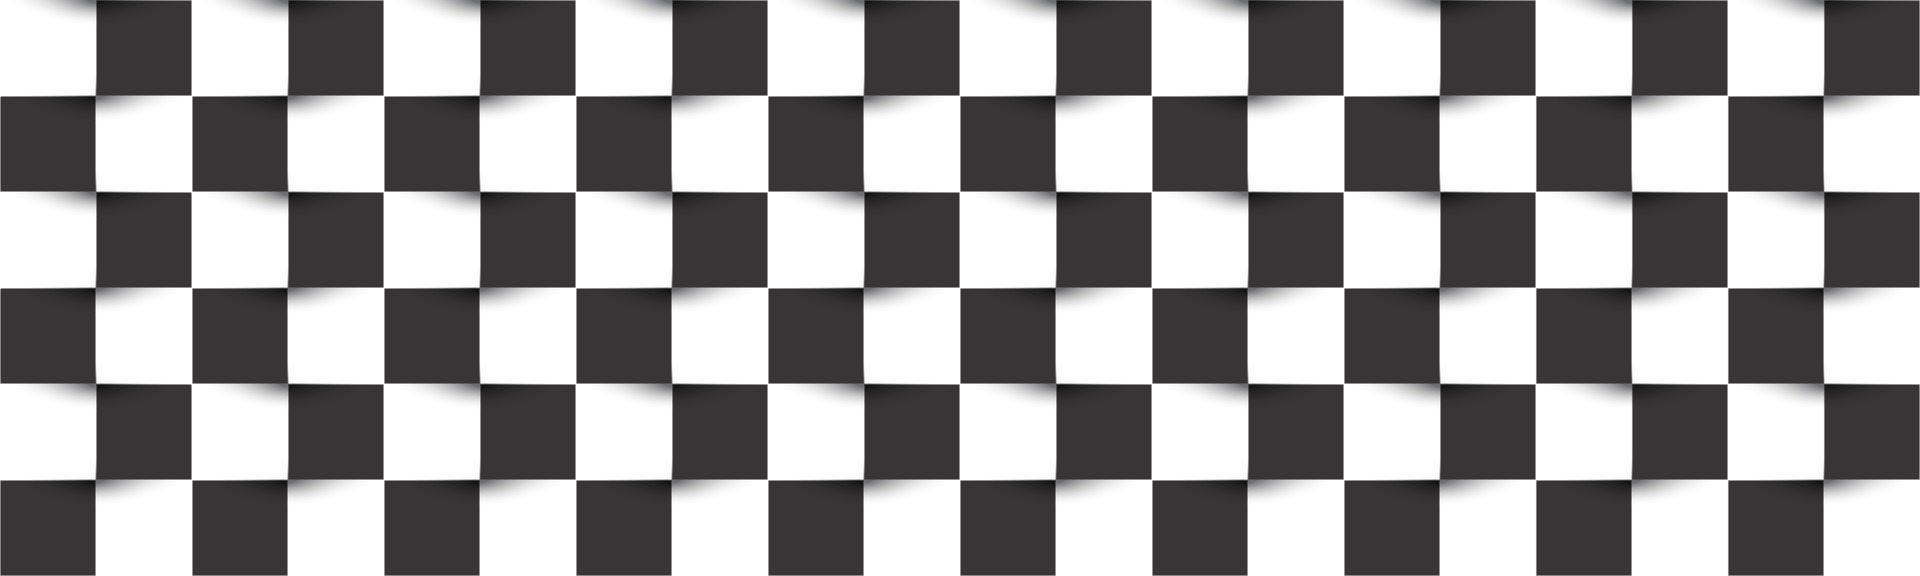 cabeçalho xadrez preto e branco. simples textura quadrada de vetor